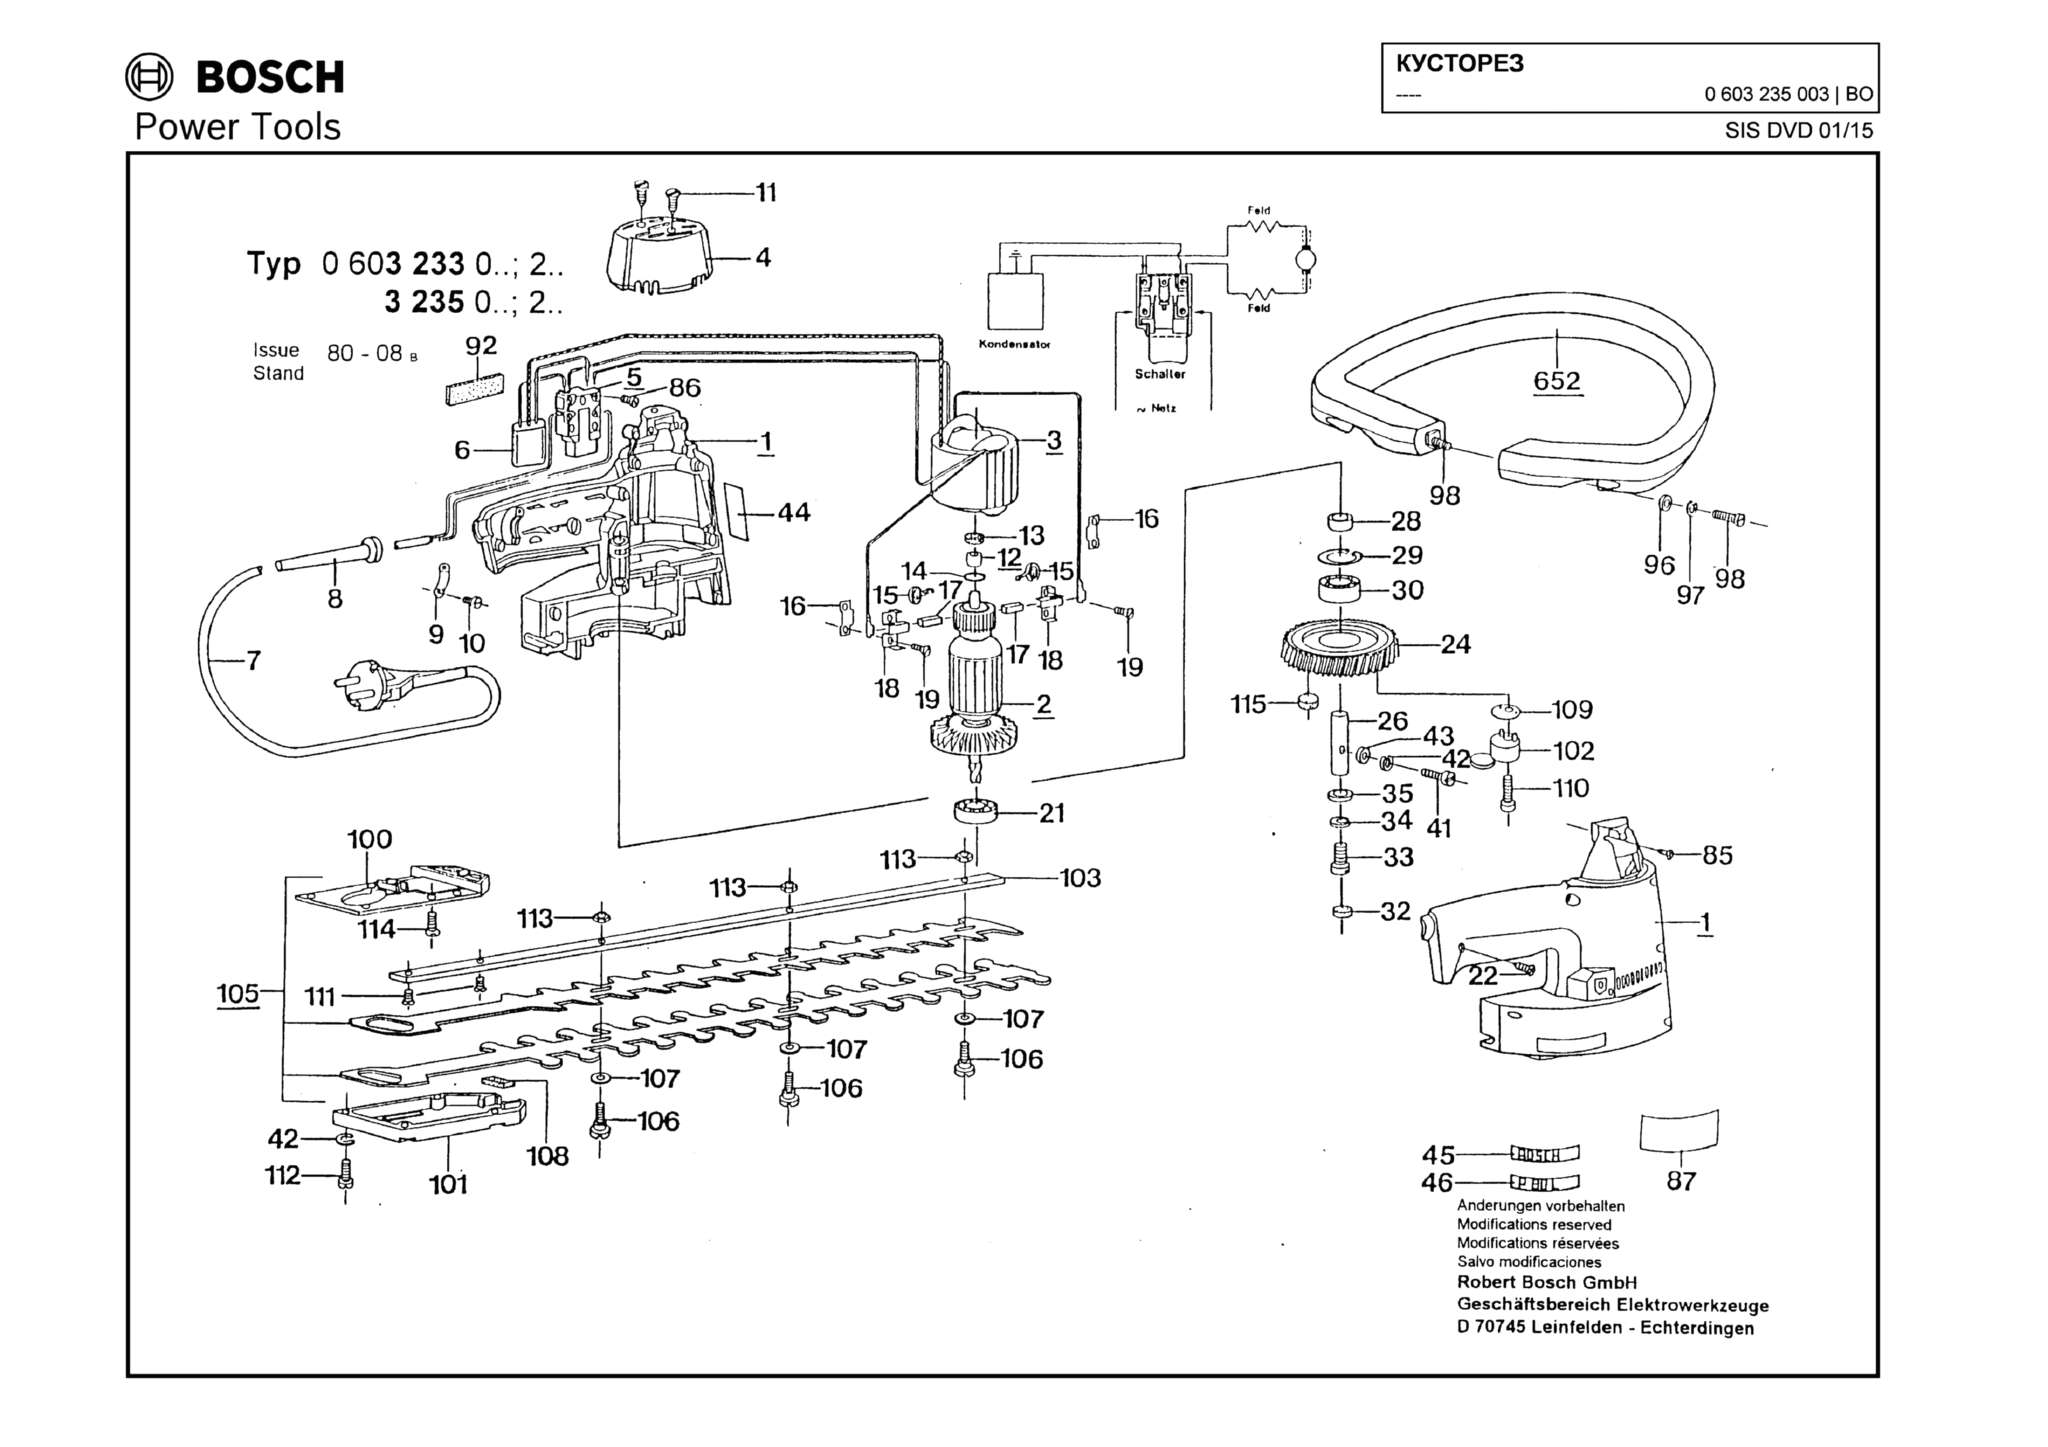 Запчасти, схема и деталировка Bosch (ТИП 0603235003)